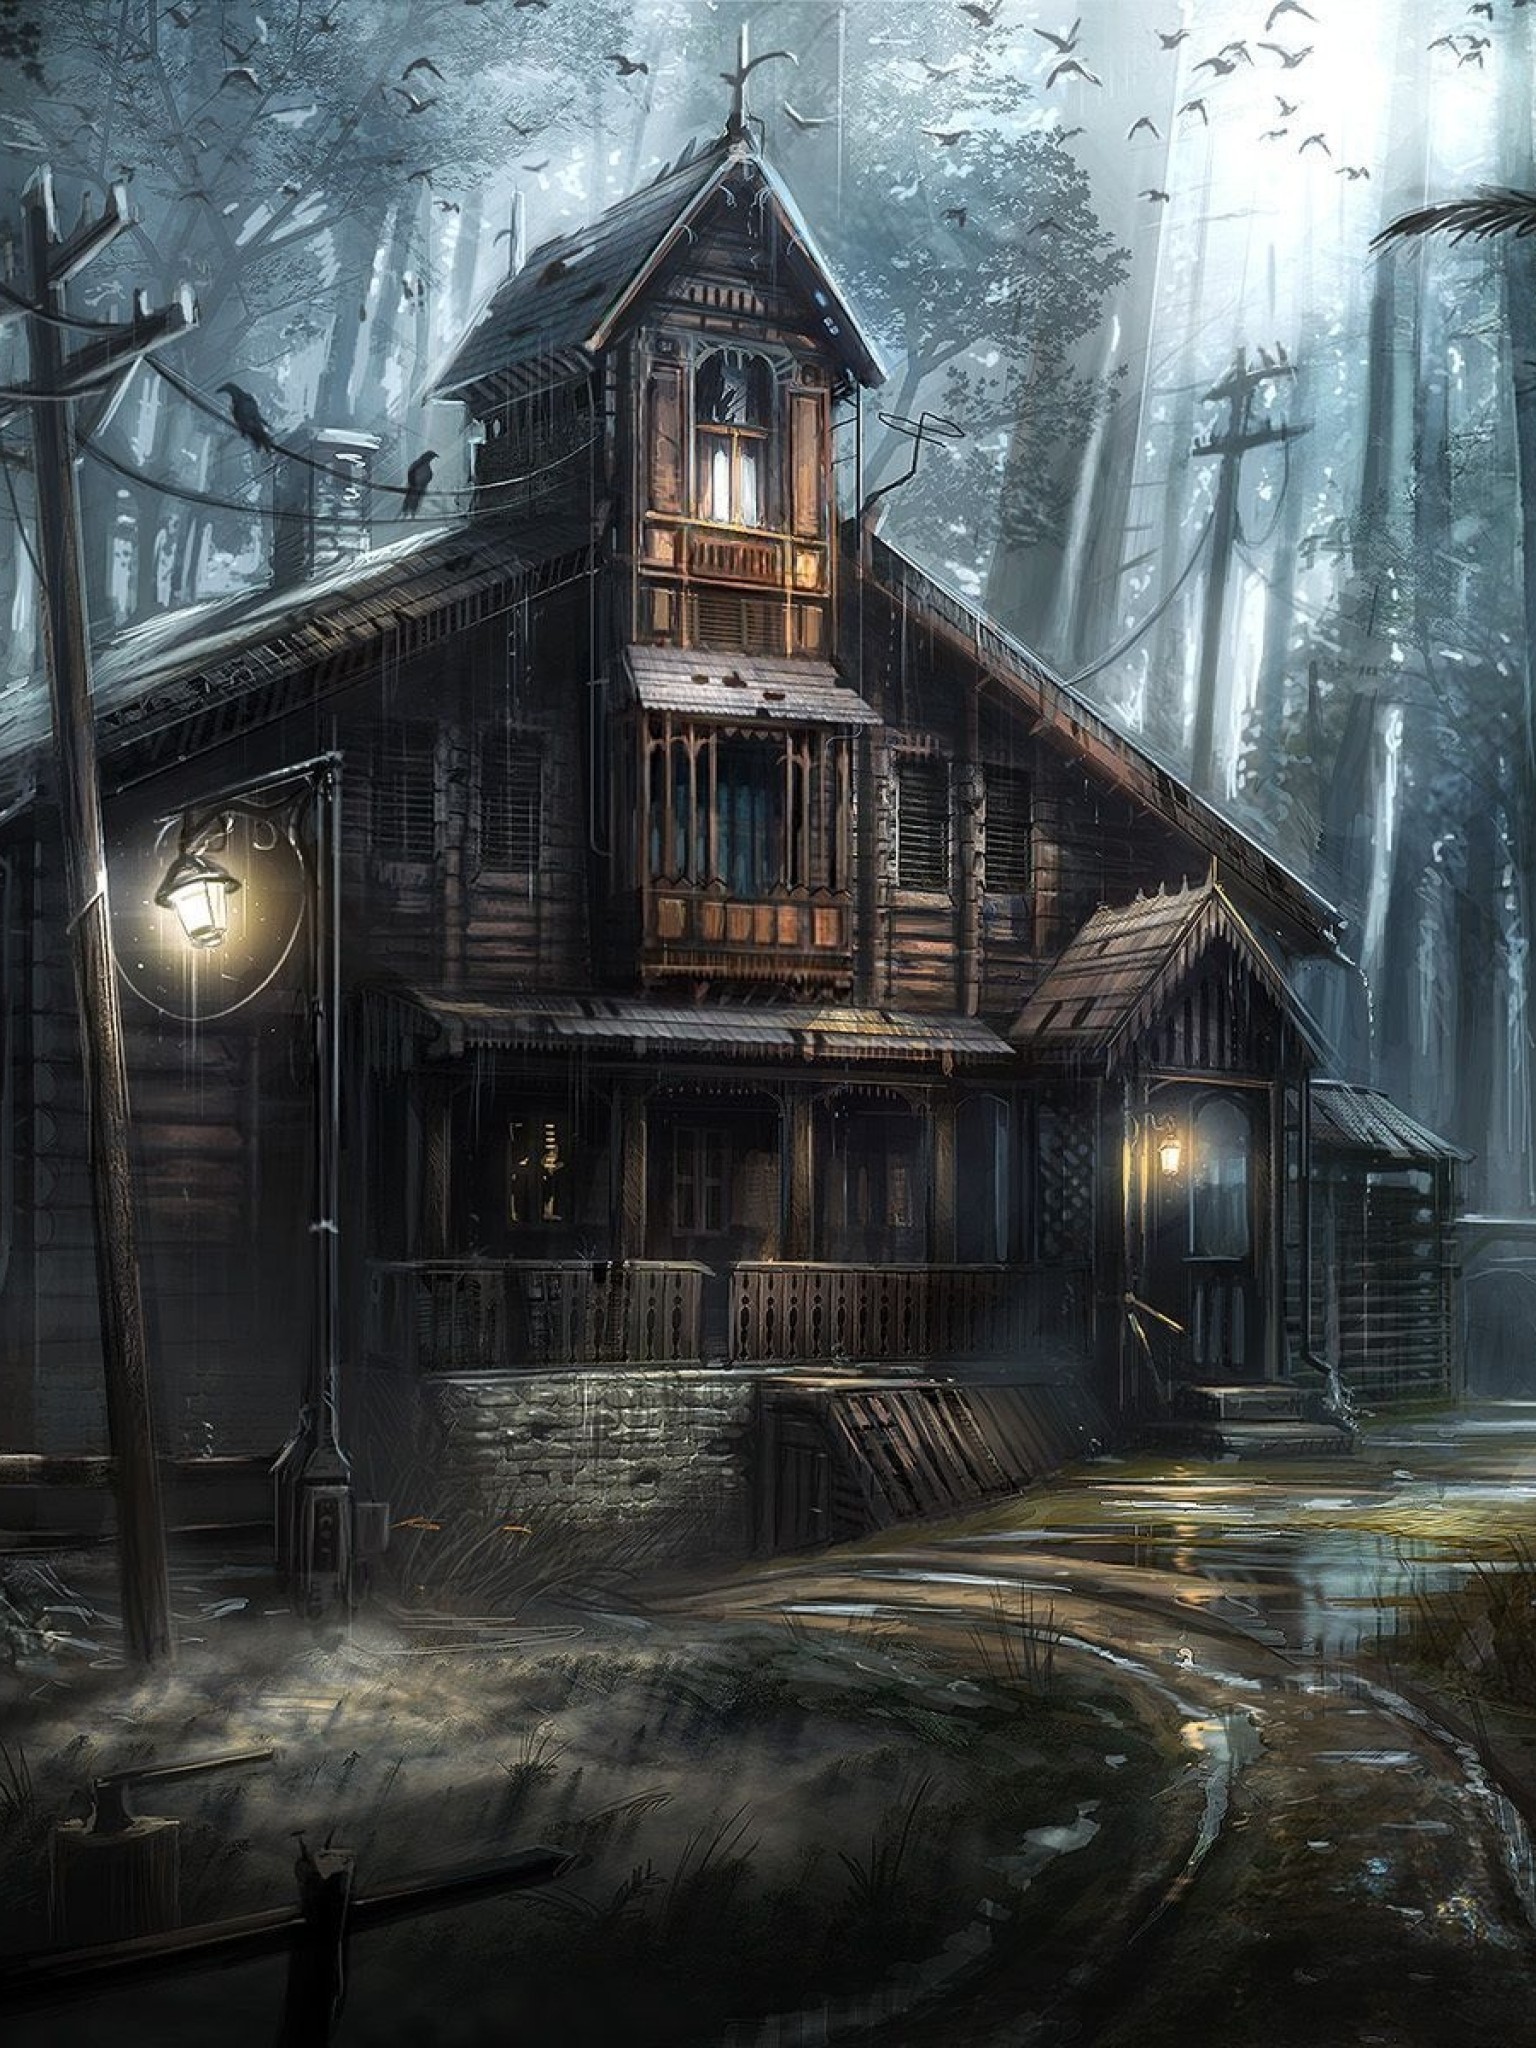 fond d'écran maison d'horreur,maison,bâtiment,illustration,cabane en rondins,atmosphère